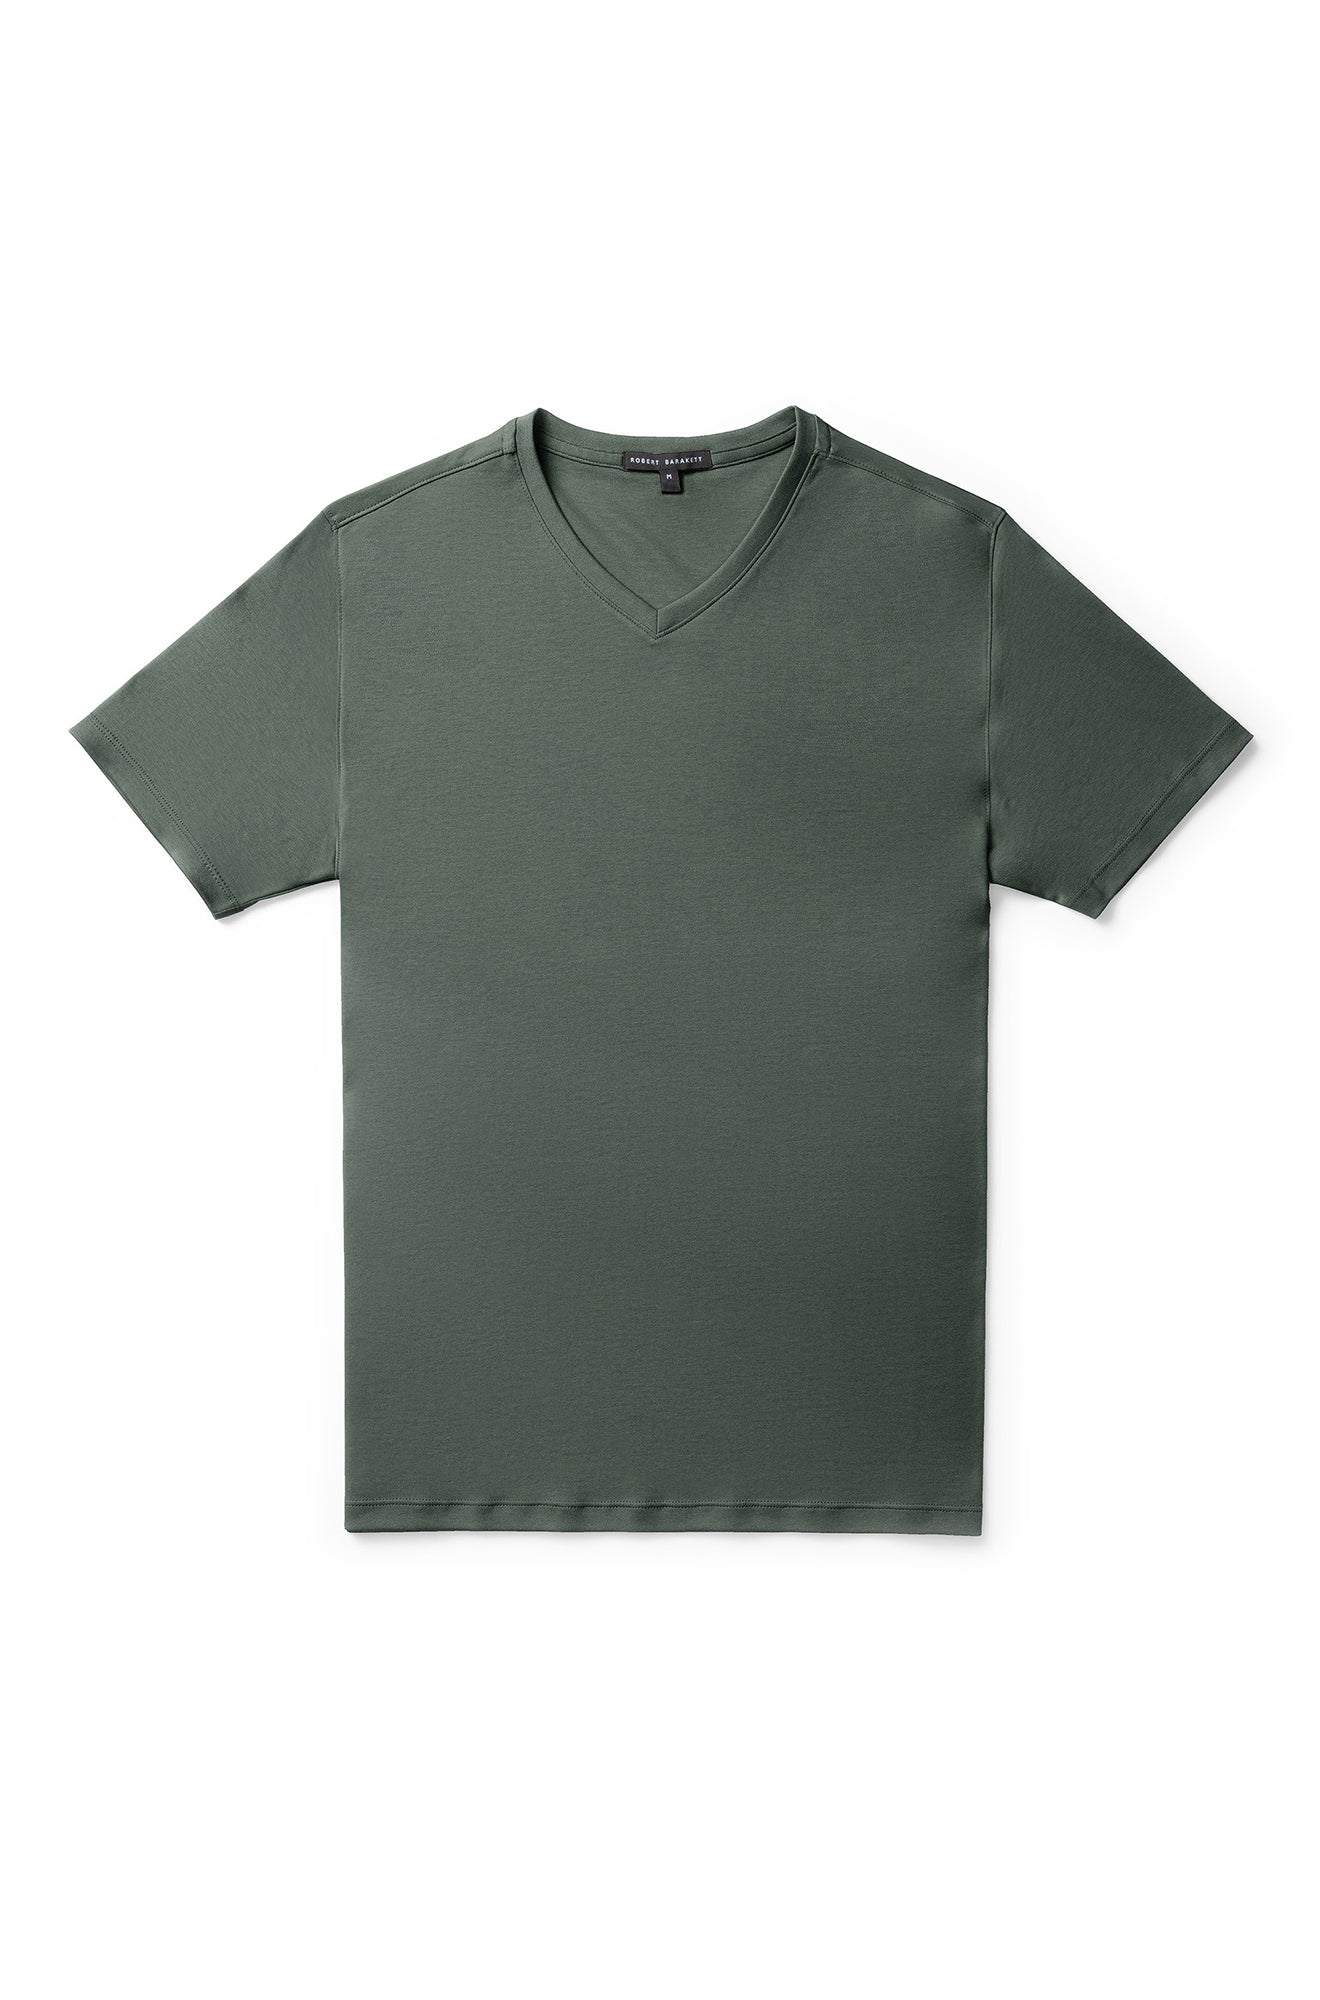 T-Shirt col-V pour homme par Robert Barakett | Georgia 23336V WILLW | Machemise.ca, vêtements mode pour homme et femme